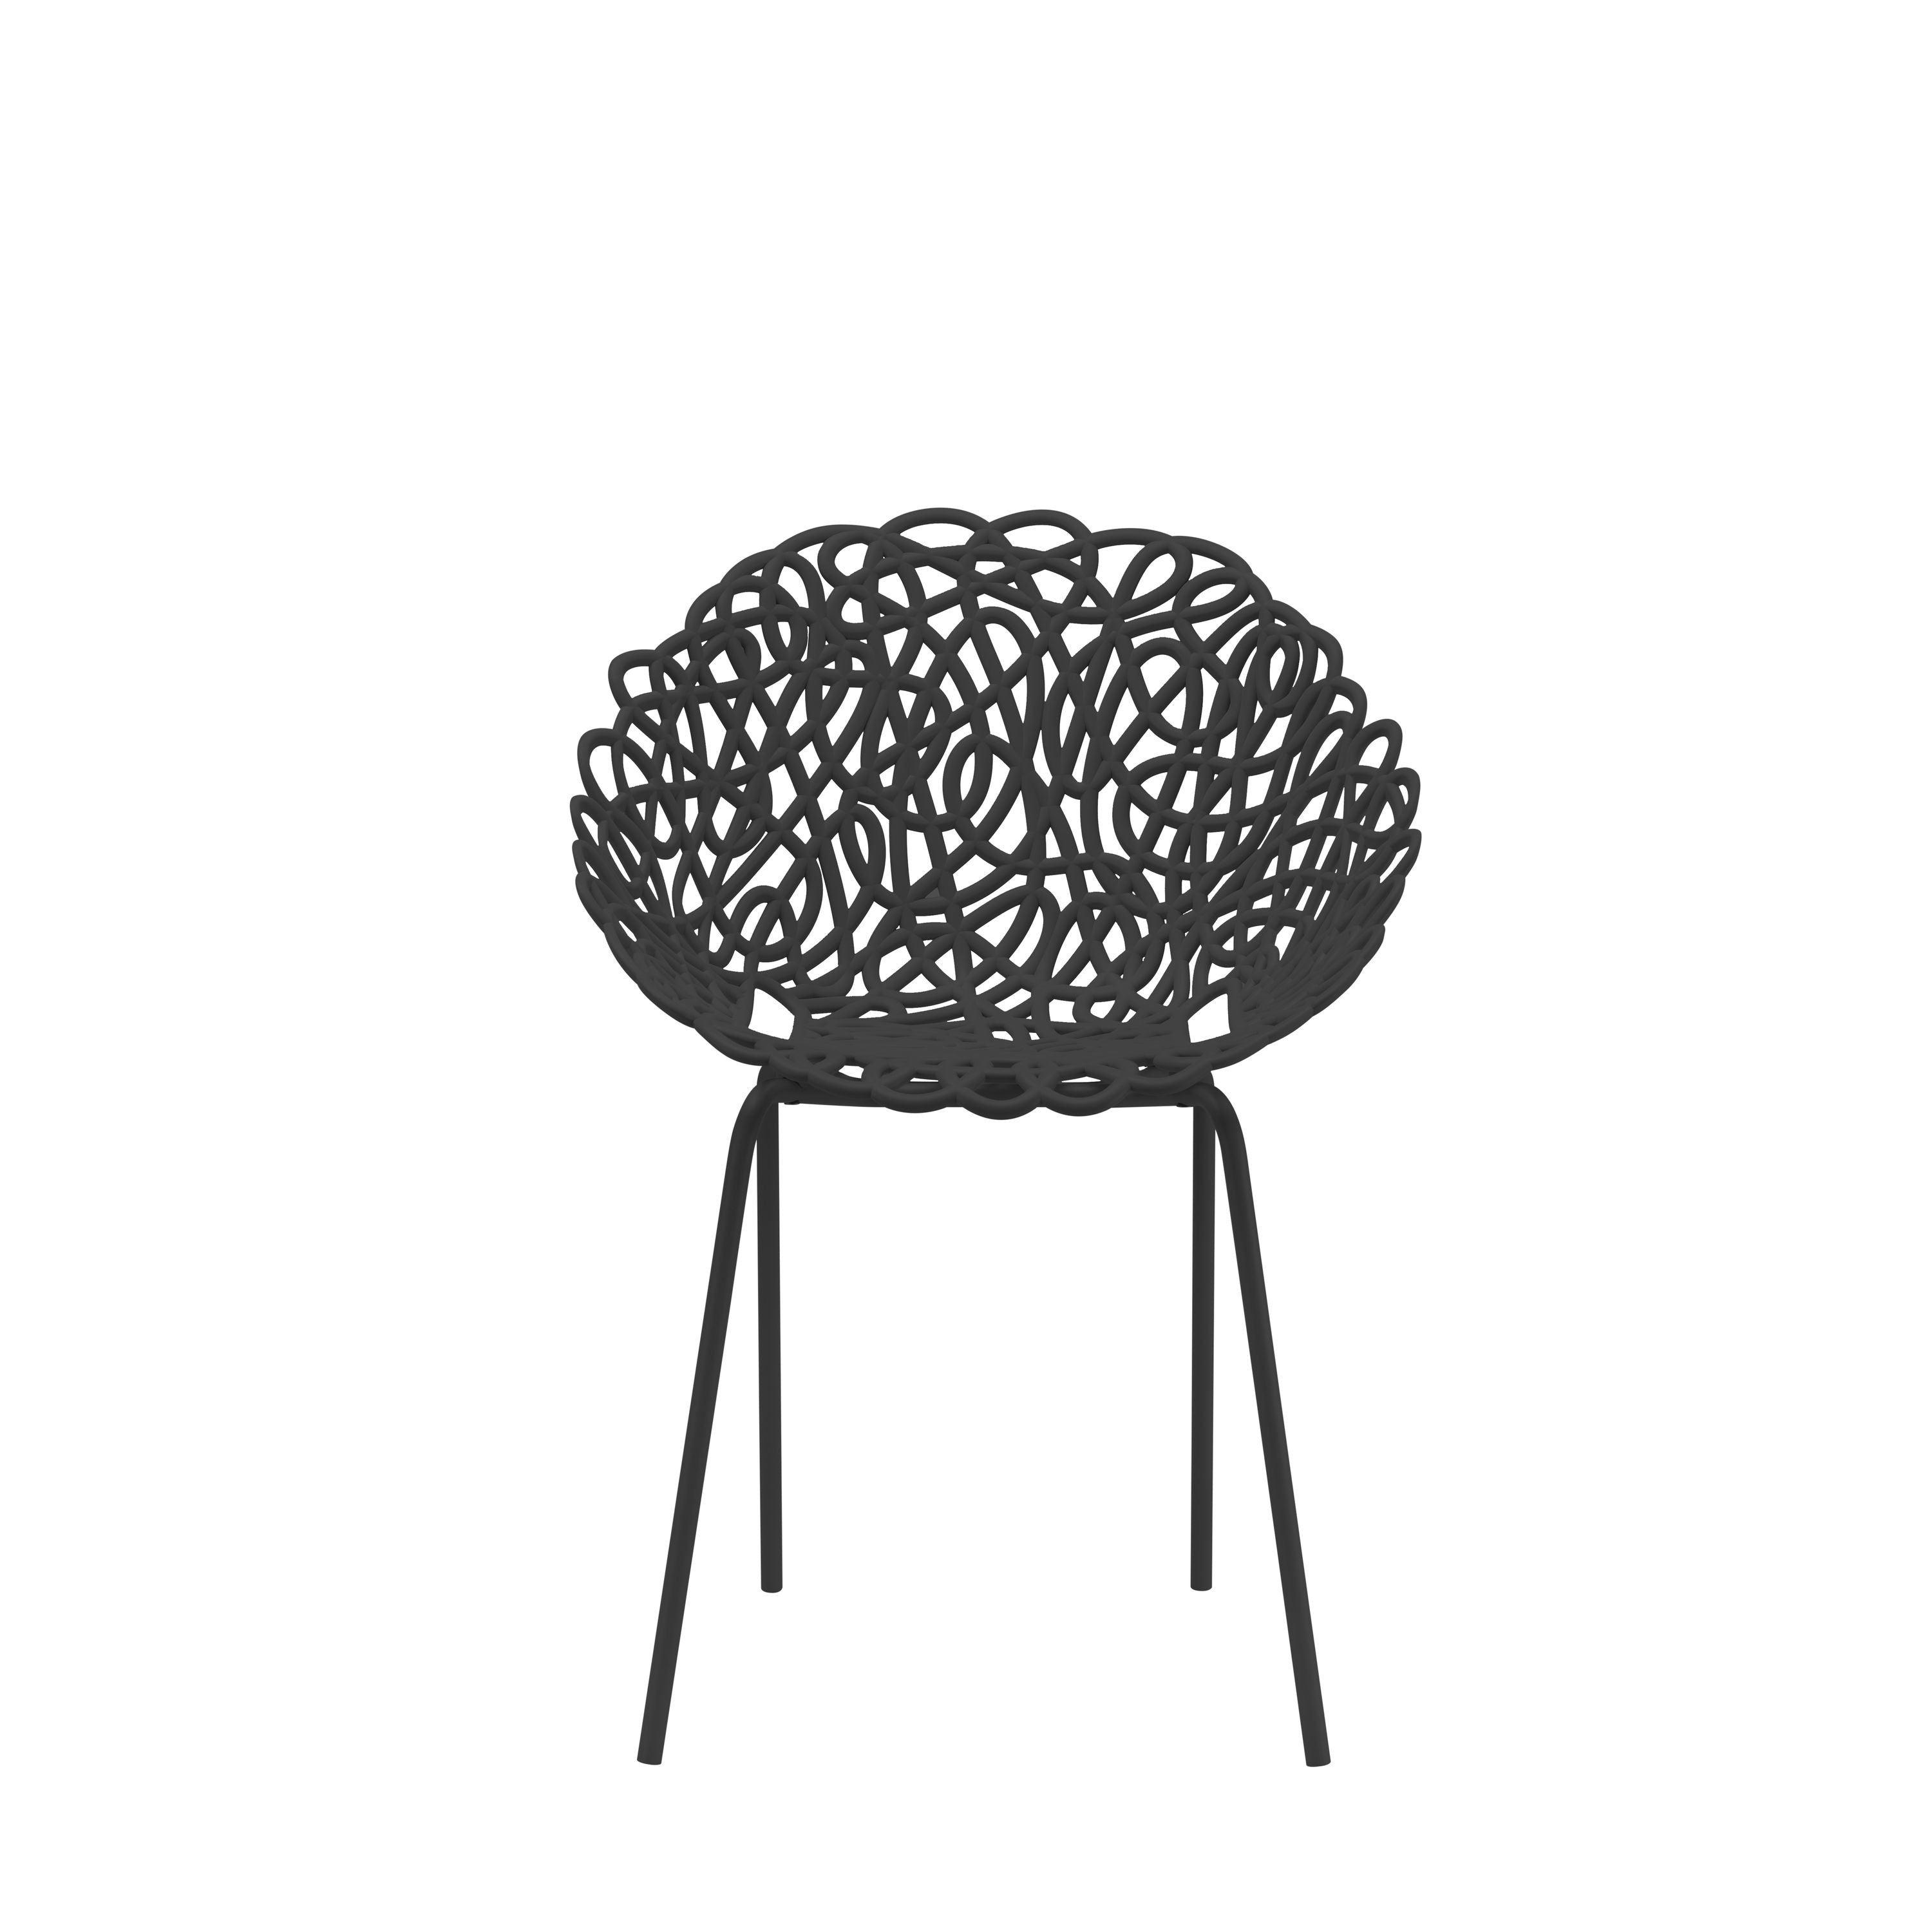 Qeeboo bacana stol udendørs sæt med 2 stk, sort